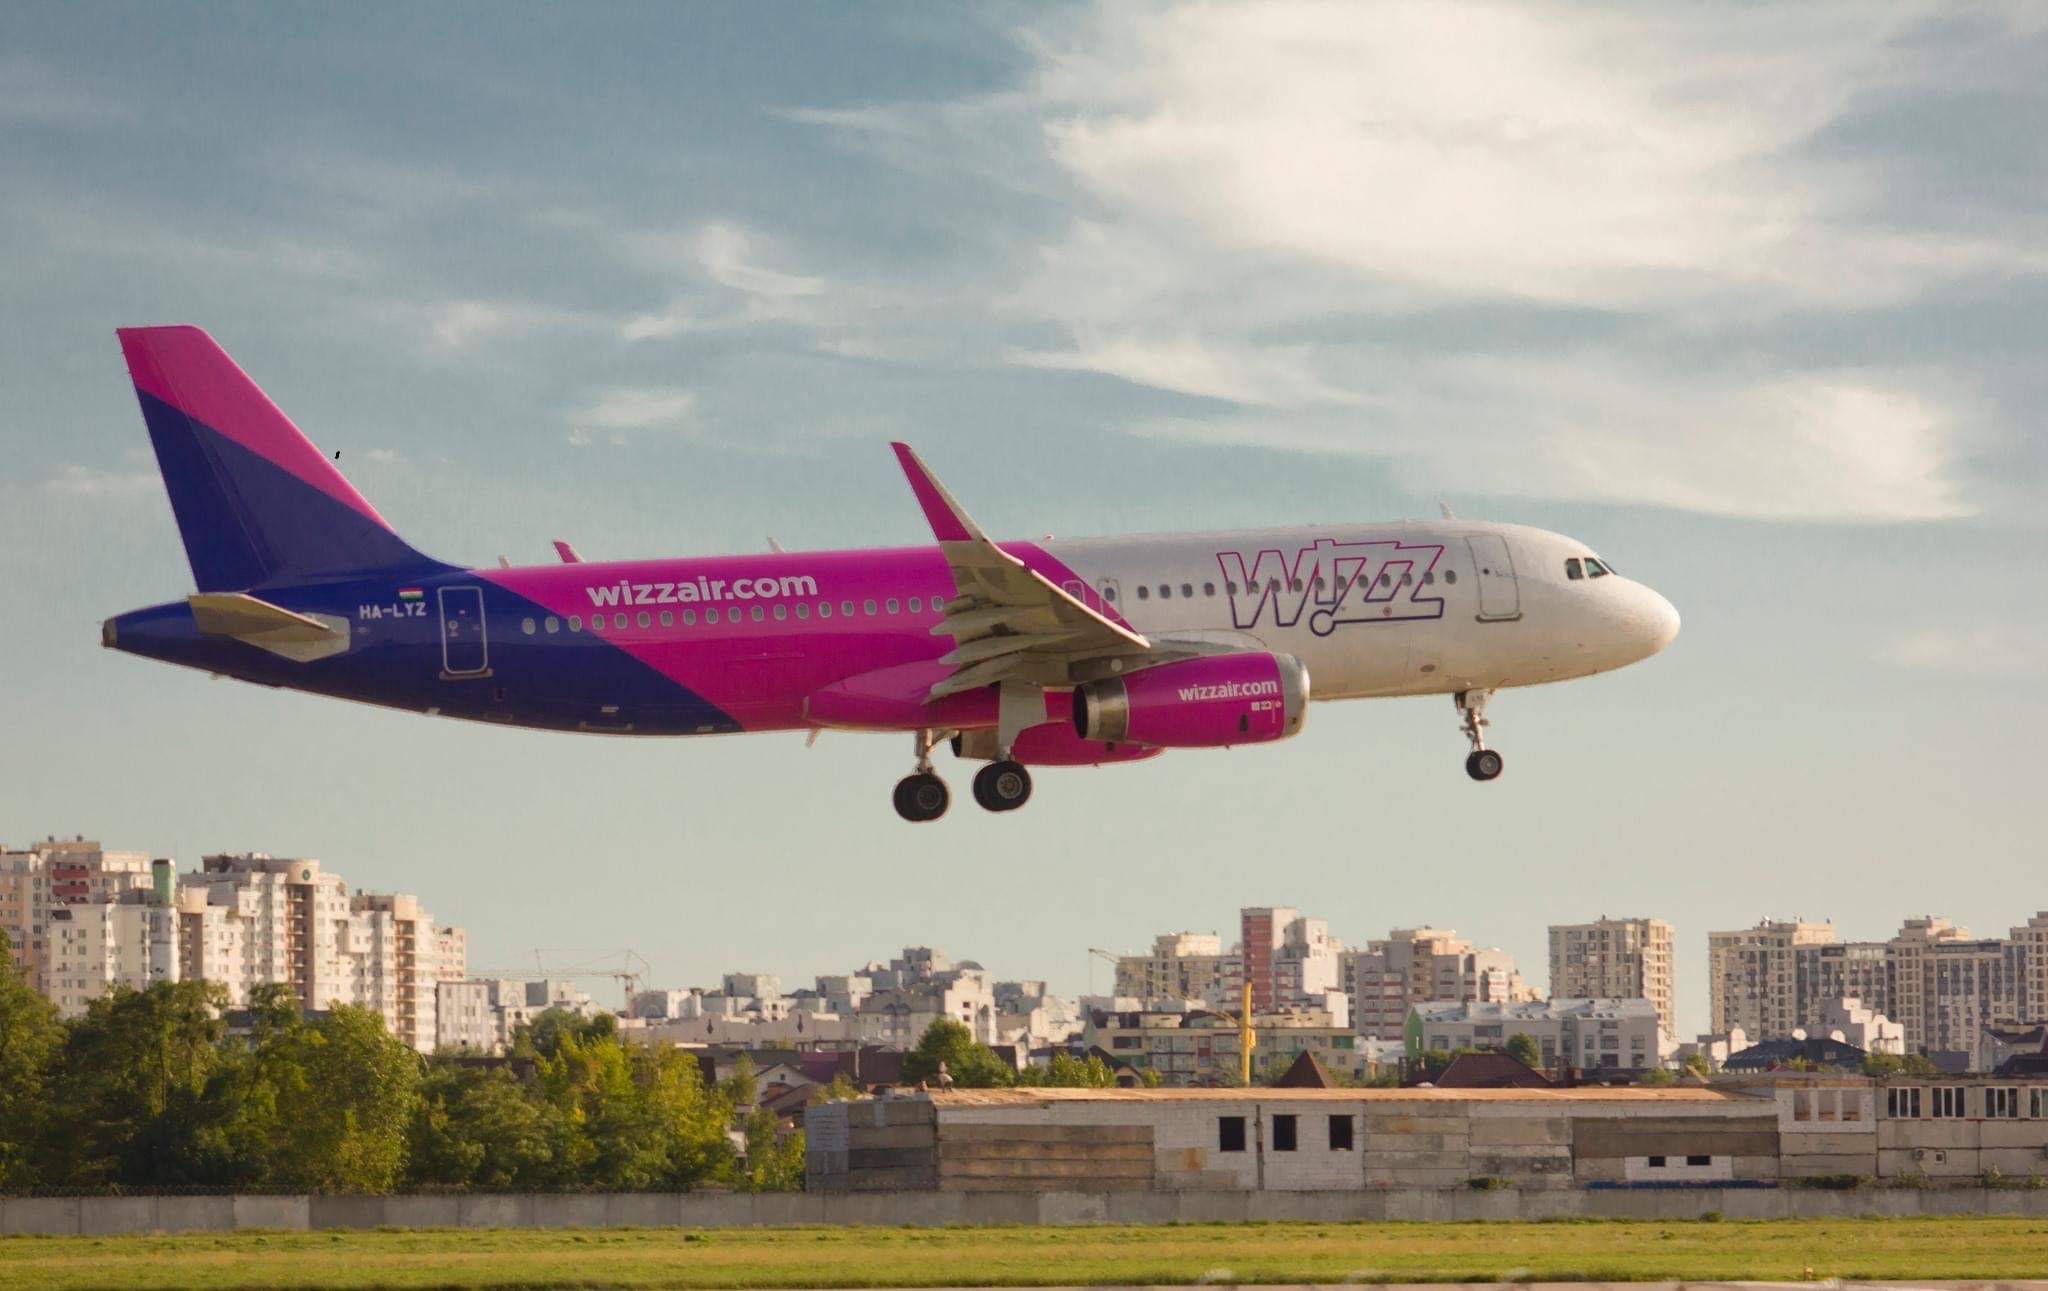 Wizz Air-მა ზაფხულის სანავიგაციო სეზონზე ფრენების დასაწყებად სამოქალაქო ავიაციის სააგენტოს უკვე მიმართა